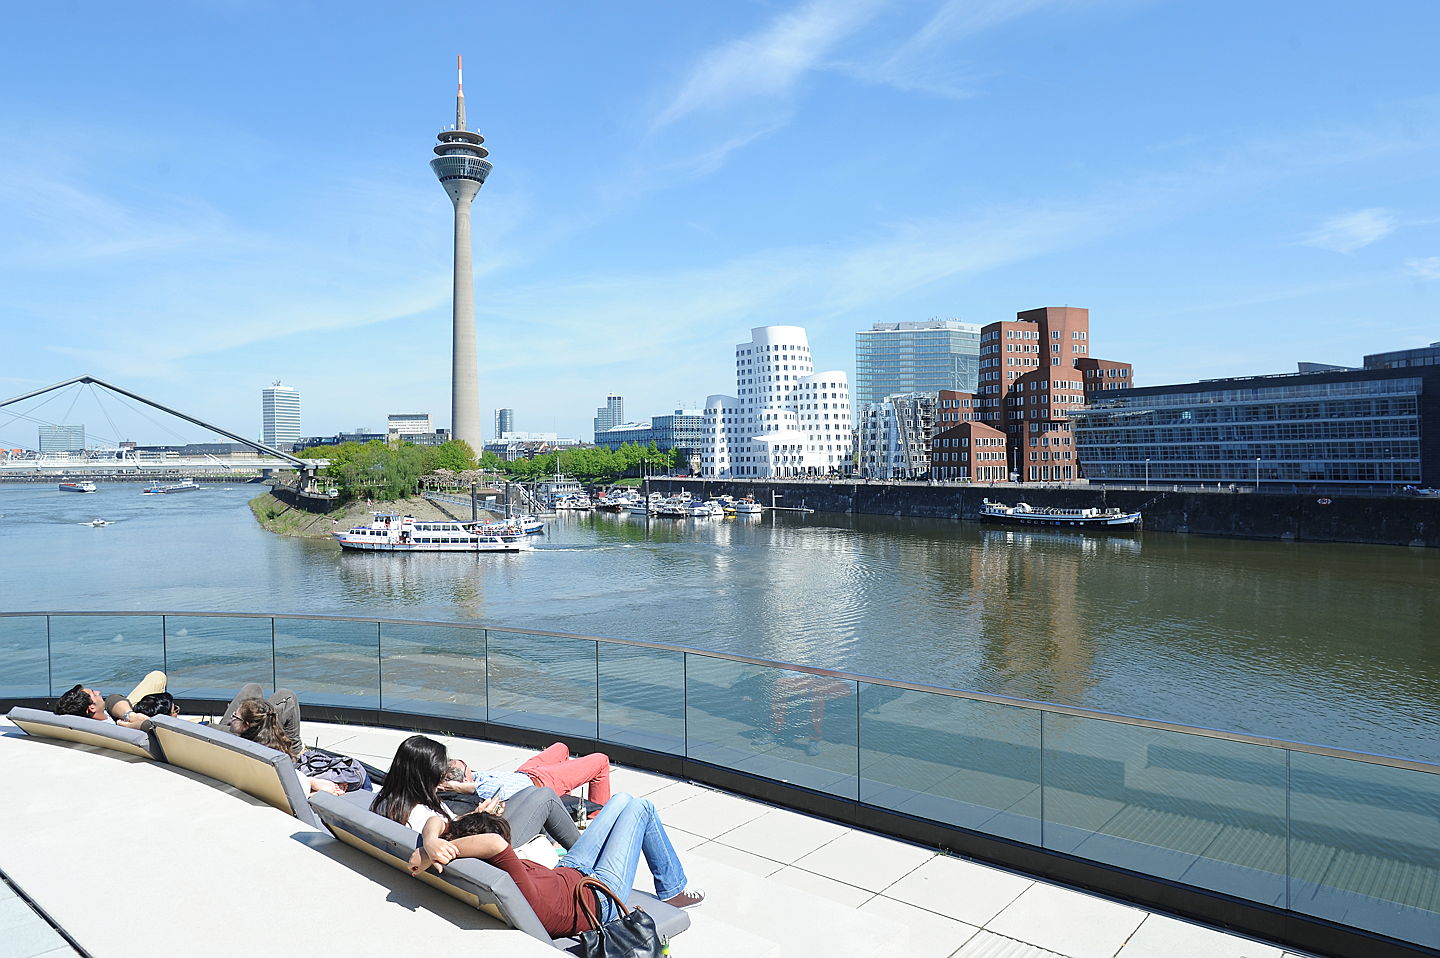  Düsseldorf
- ileadmin_assets_bilder_dmt_bildarchiv_public_Medienhafen_MedienHafen 3.jpg